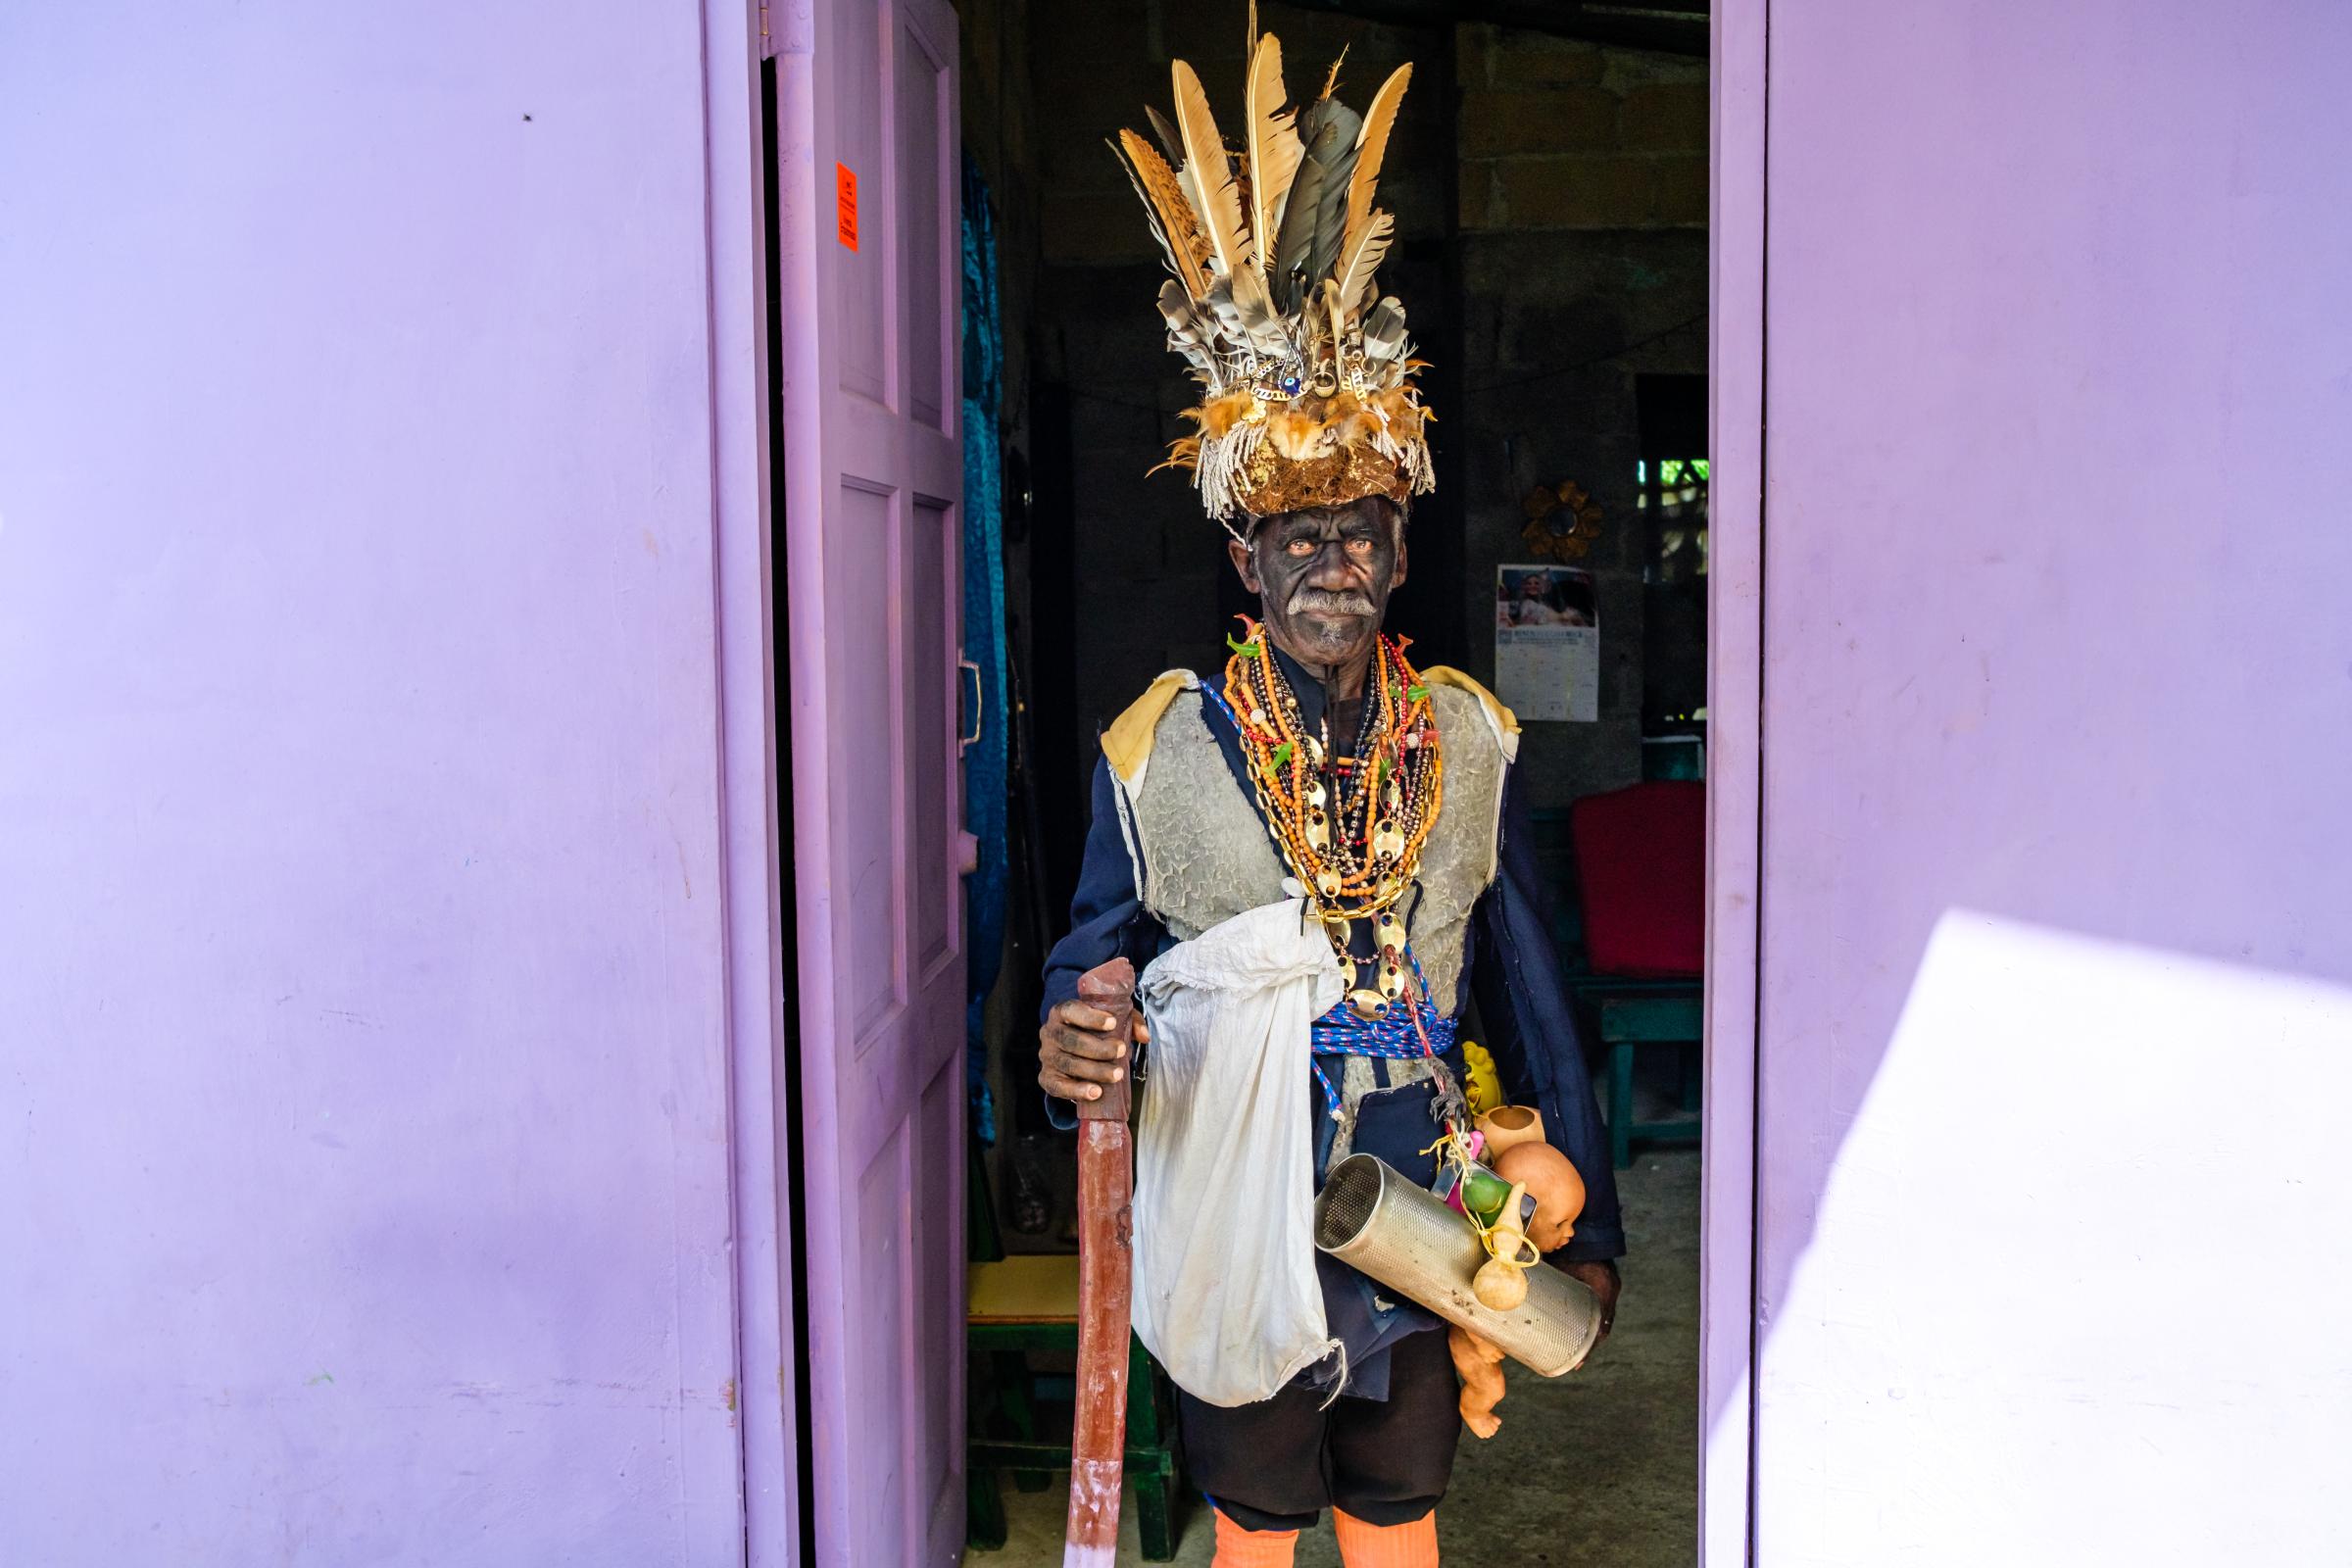 Congo Culture, Portobelo, Panama - Aranda  posing as Congo. Congo traditions in Panama...